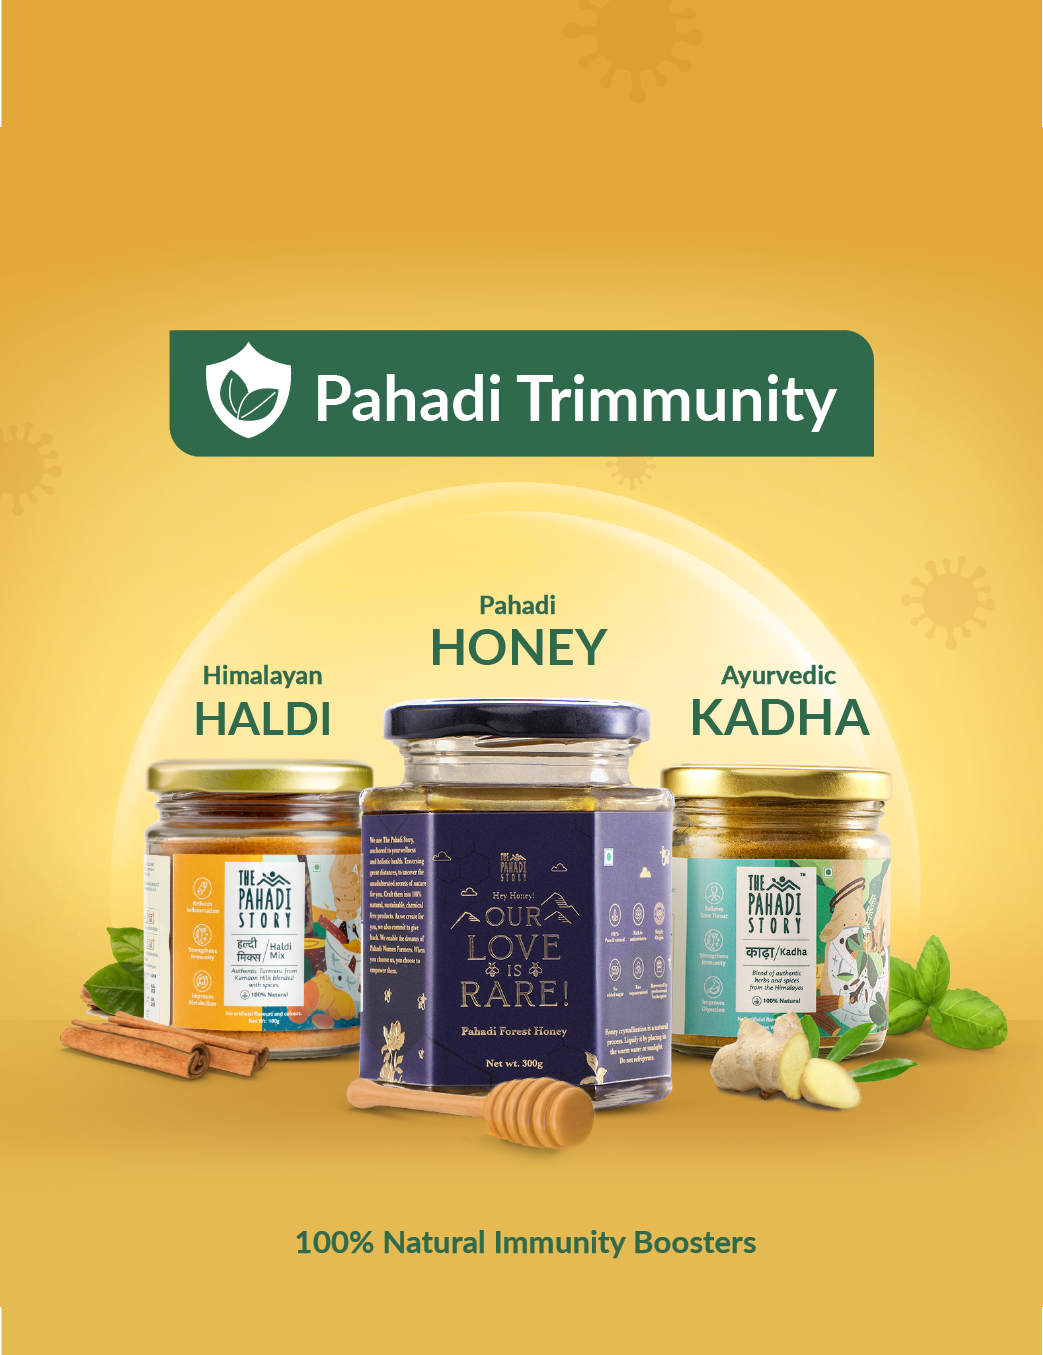 The Pahadi Trimmunity - The Pahadi Story 